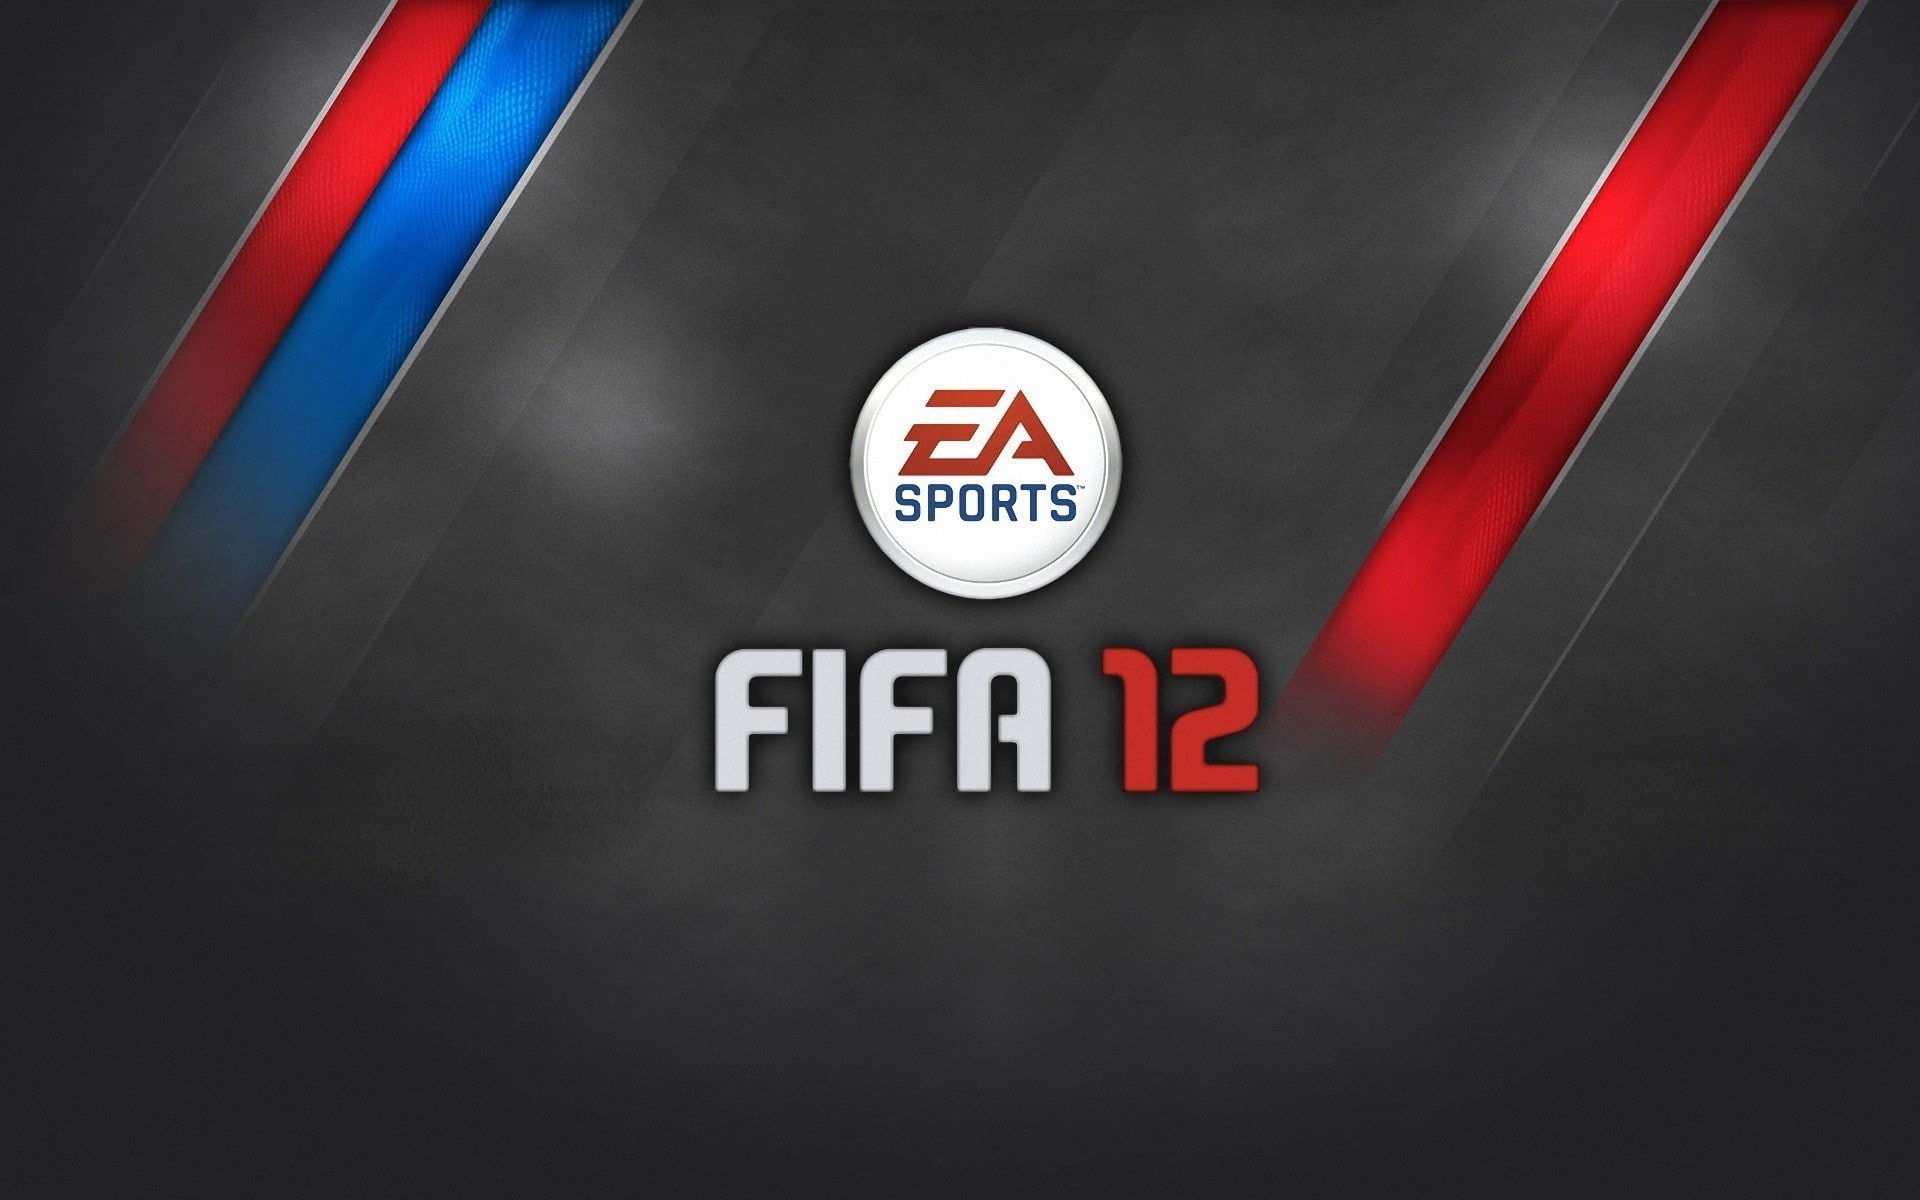 FIFA 12 EA Sports Game